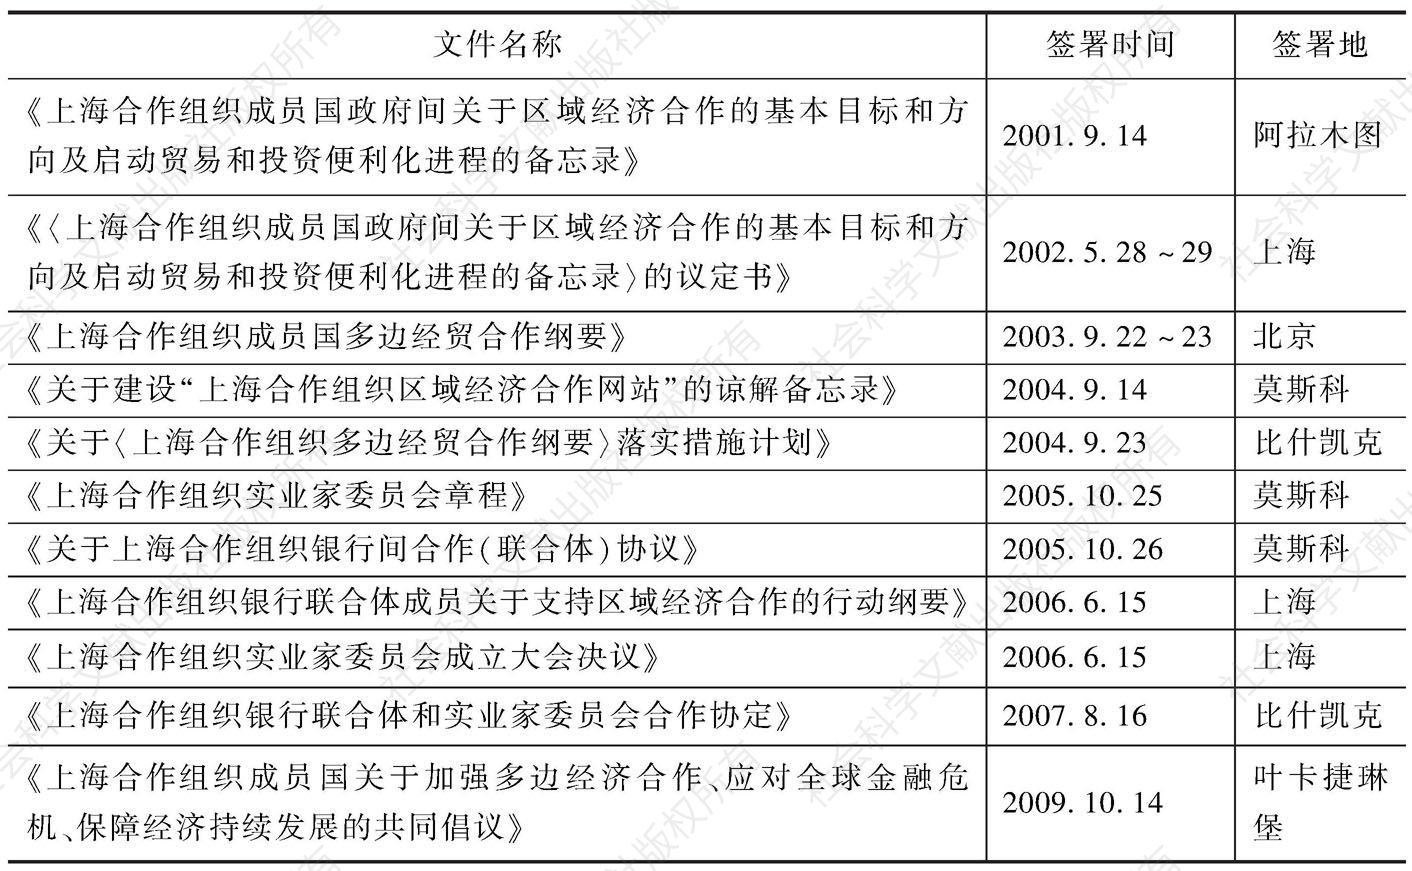 表4-1 上海合作组织区域经济合作的基本文件